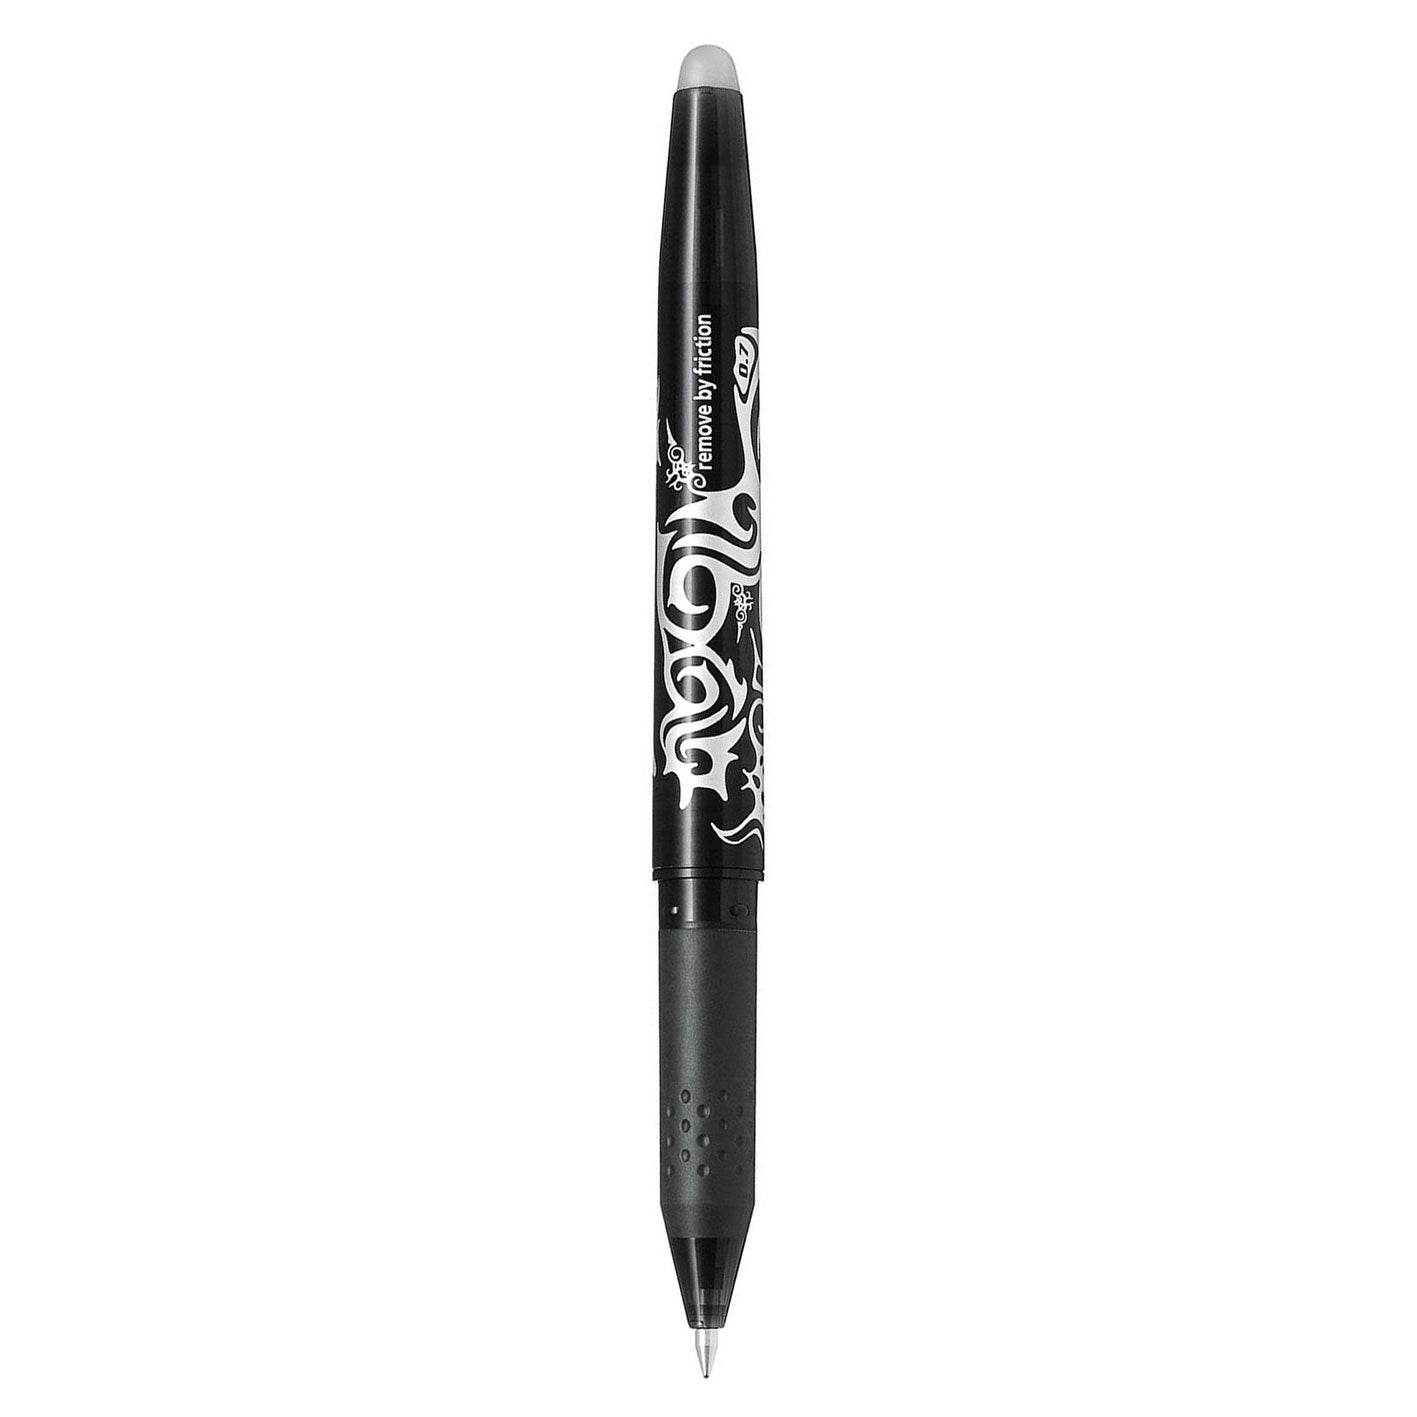 Pilot Frixion Erasable Gel Ink Pen Fine 0.7mm Black Pack 12